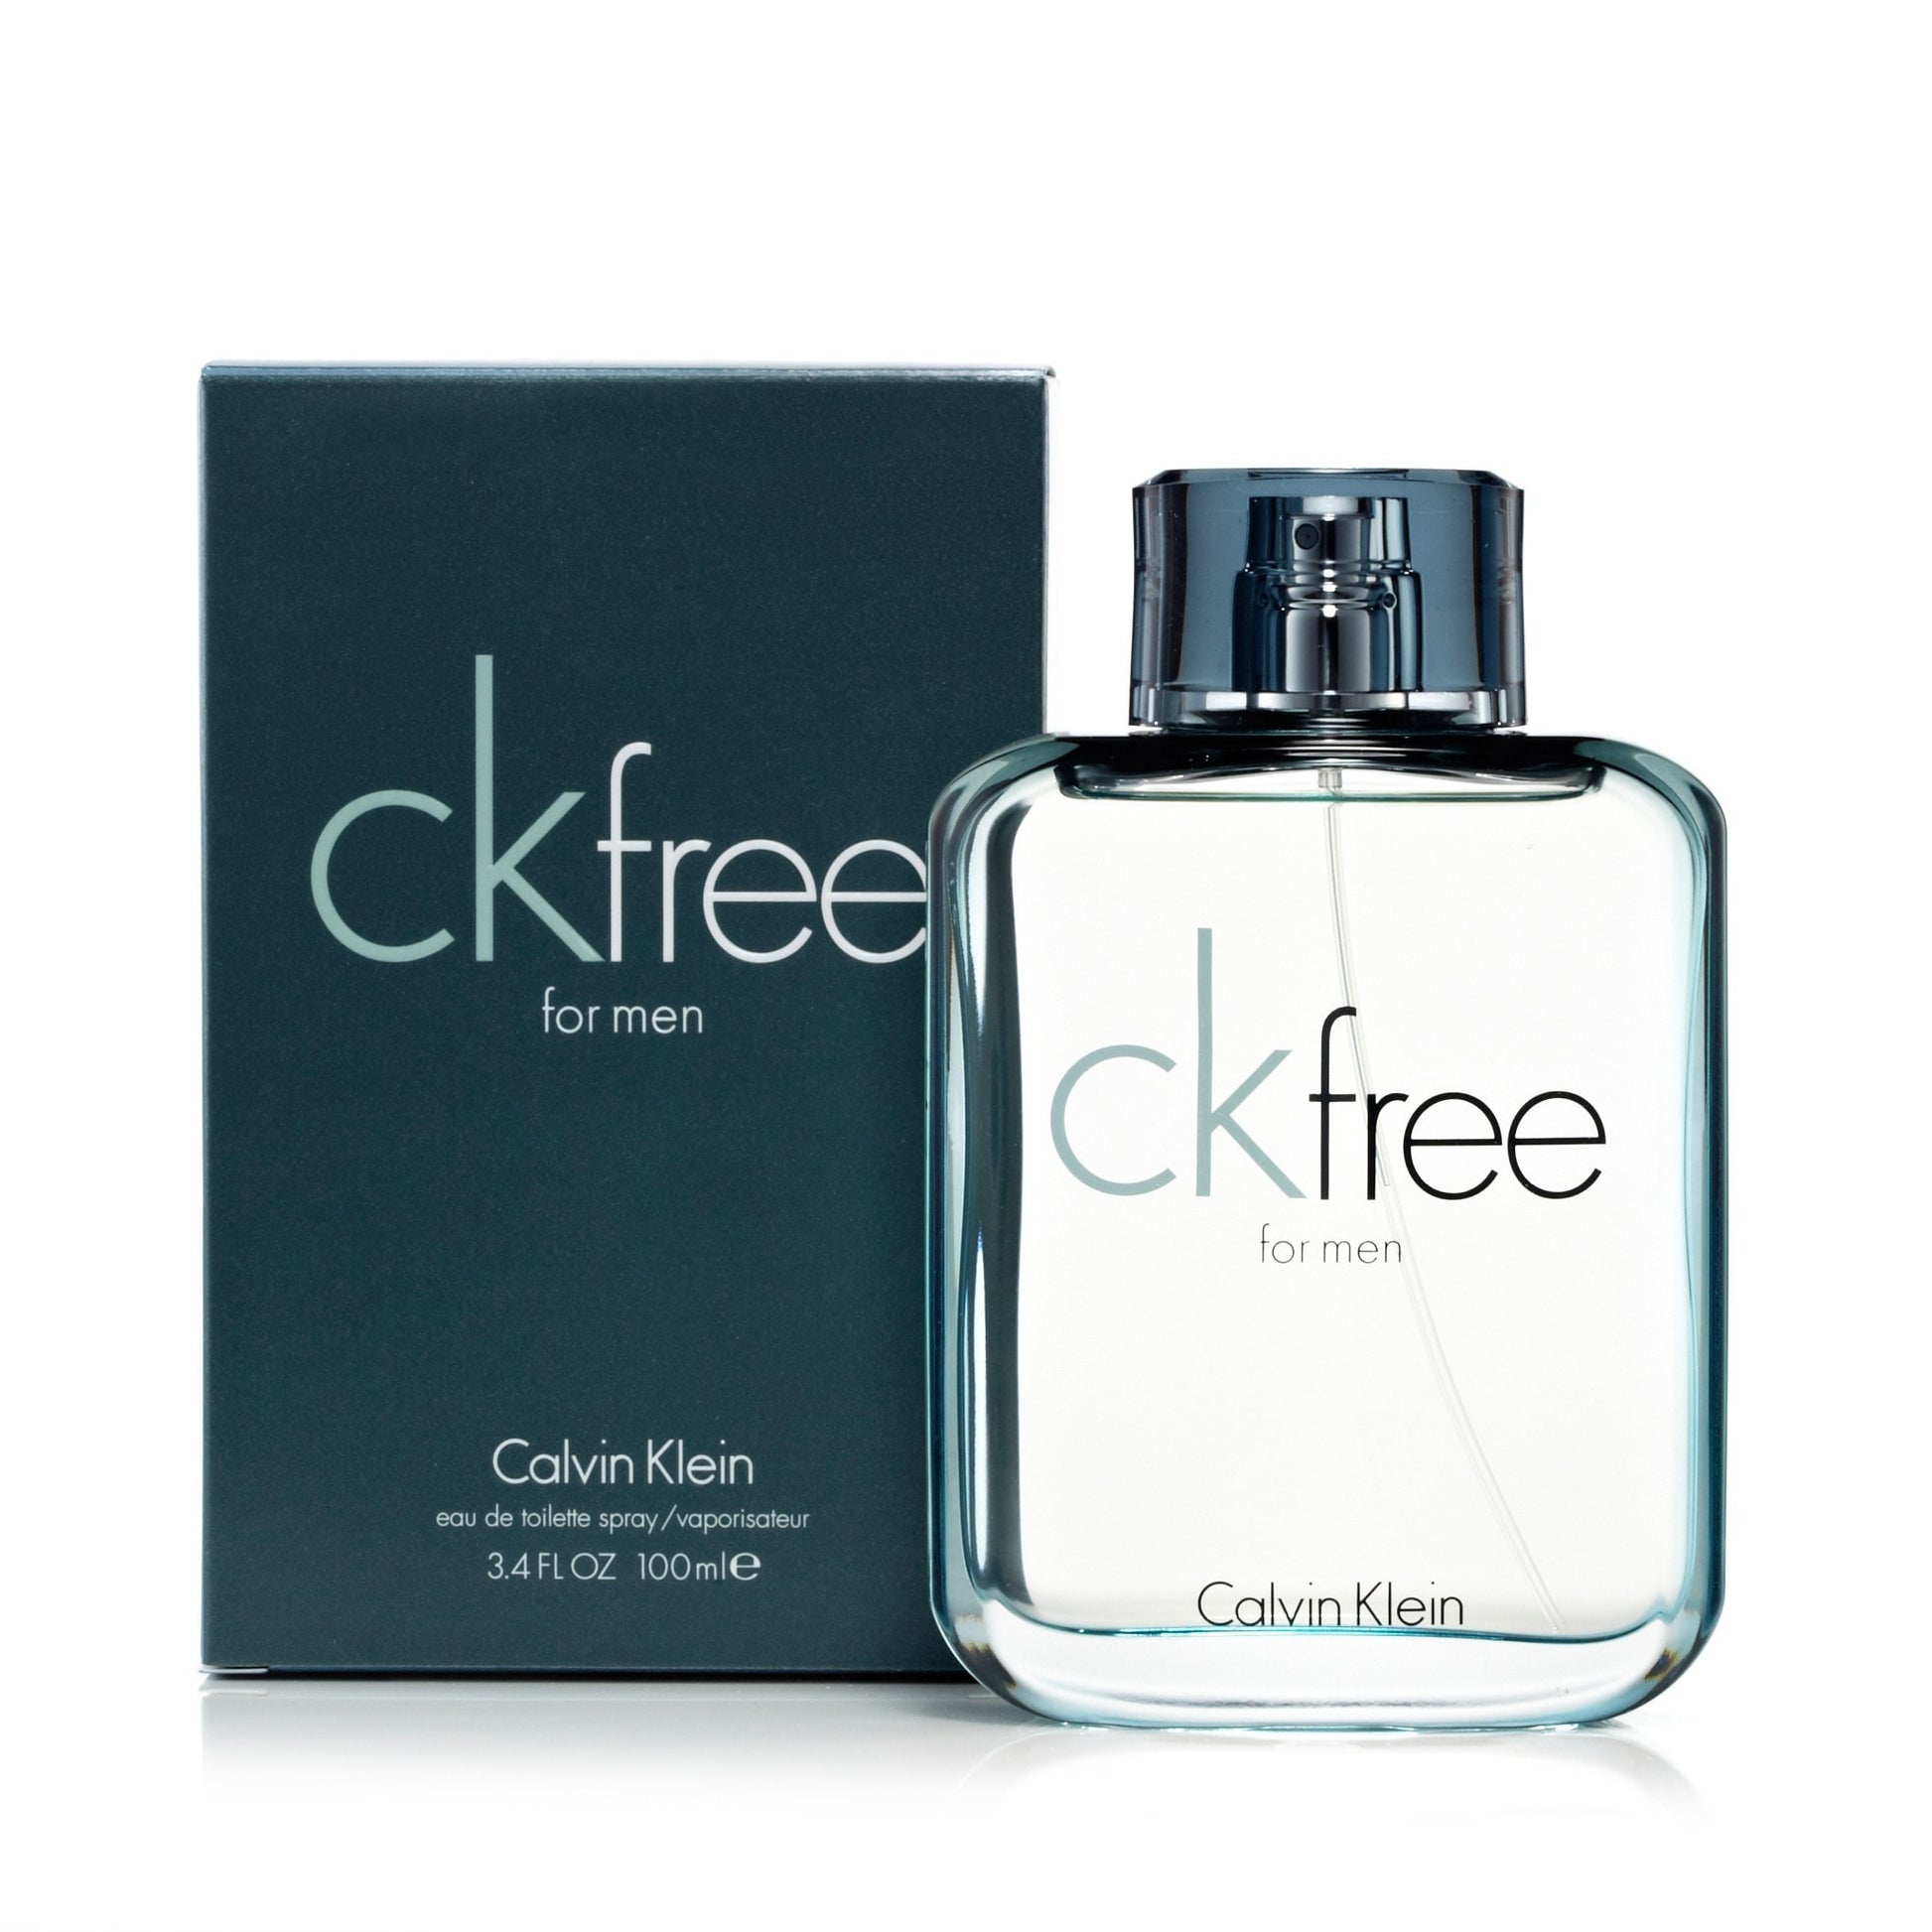 Free Eau de Toilette Spray for Men by Calvin Klein 3.4 oz. Click to open in modal